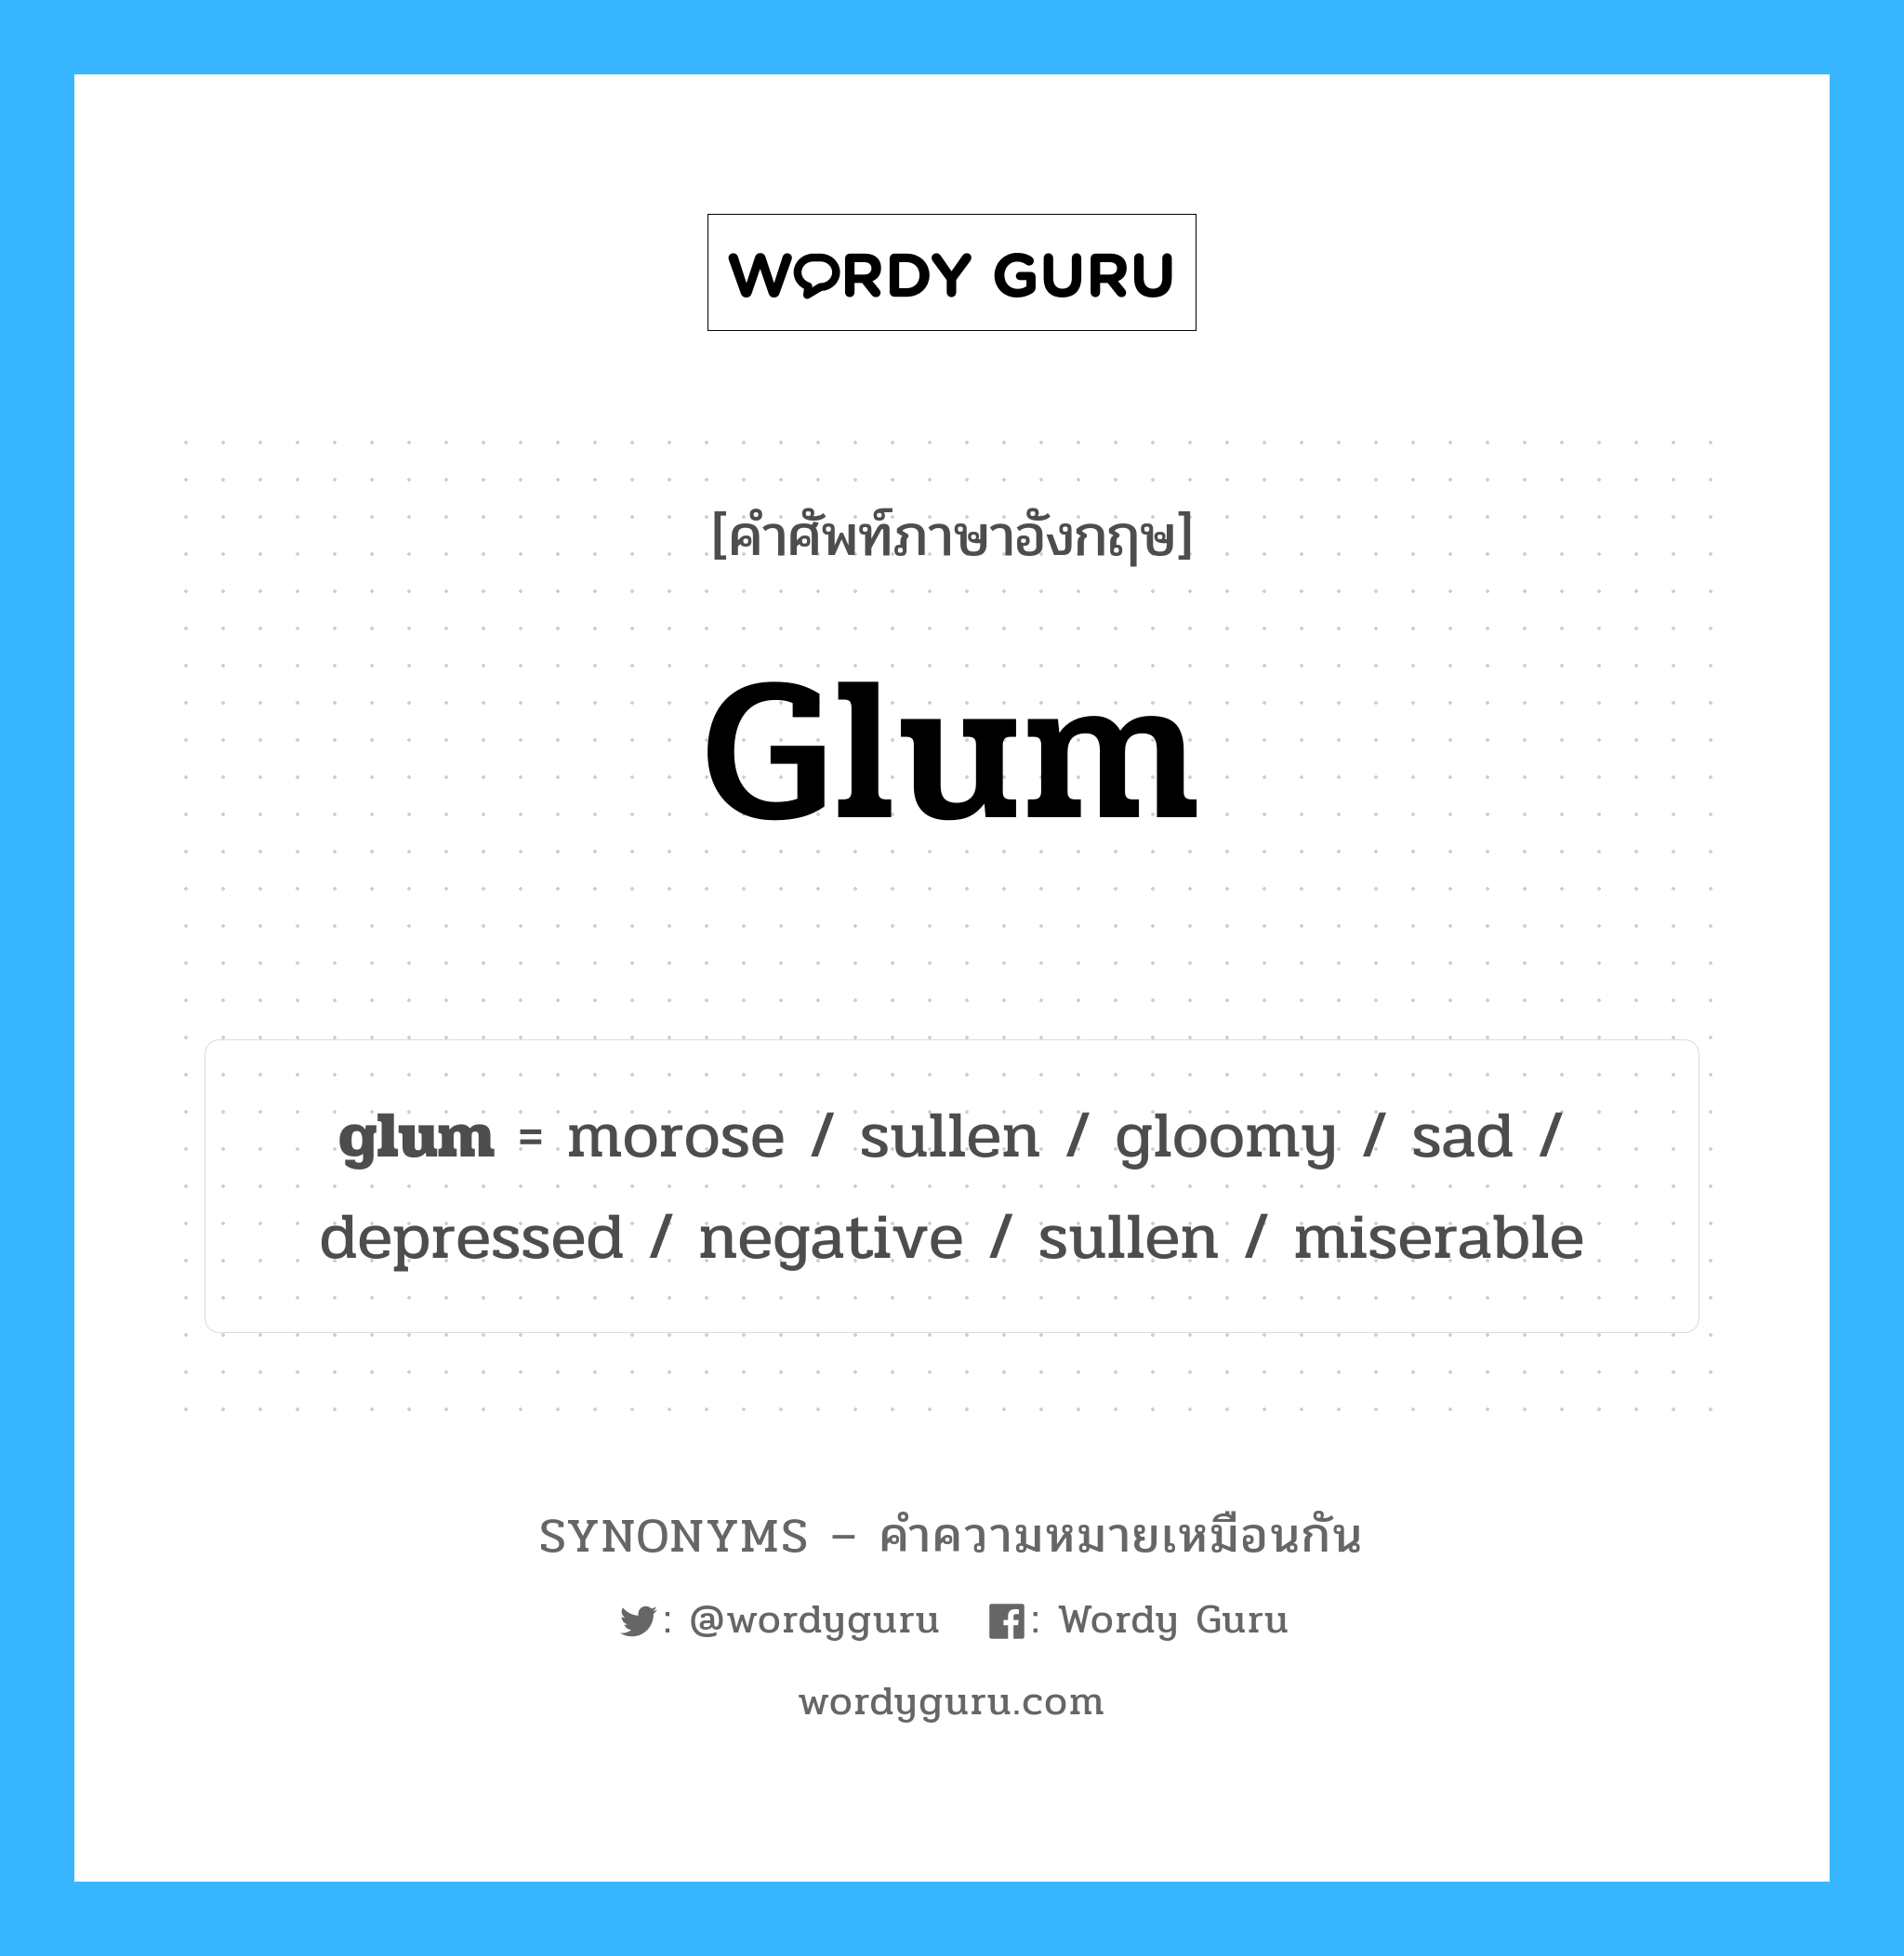 glum เป็นหนึ่งใน sad และมีคำอื่น ๆ อีกดังนี้, คำศัพท์ภาษาอังกฤษ glum ความหมายคล้ายกันกับ sad แปลว่า เศร้า หมวด sad